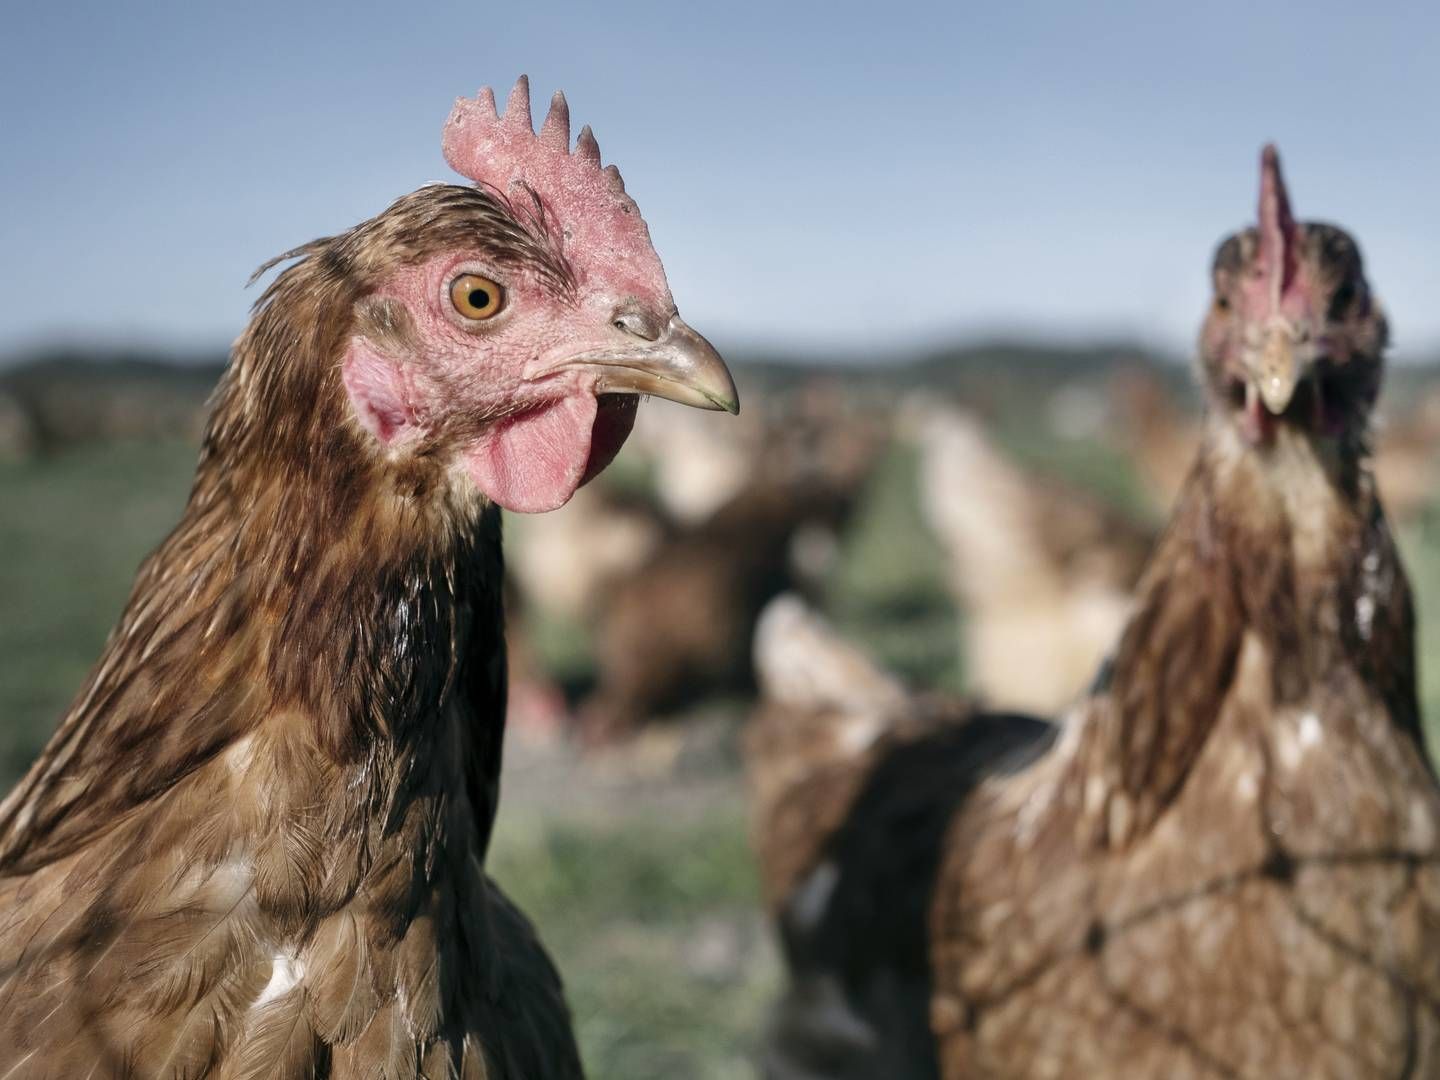 Økologer krav om æg på — AgriWatch